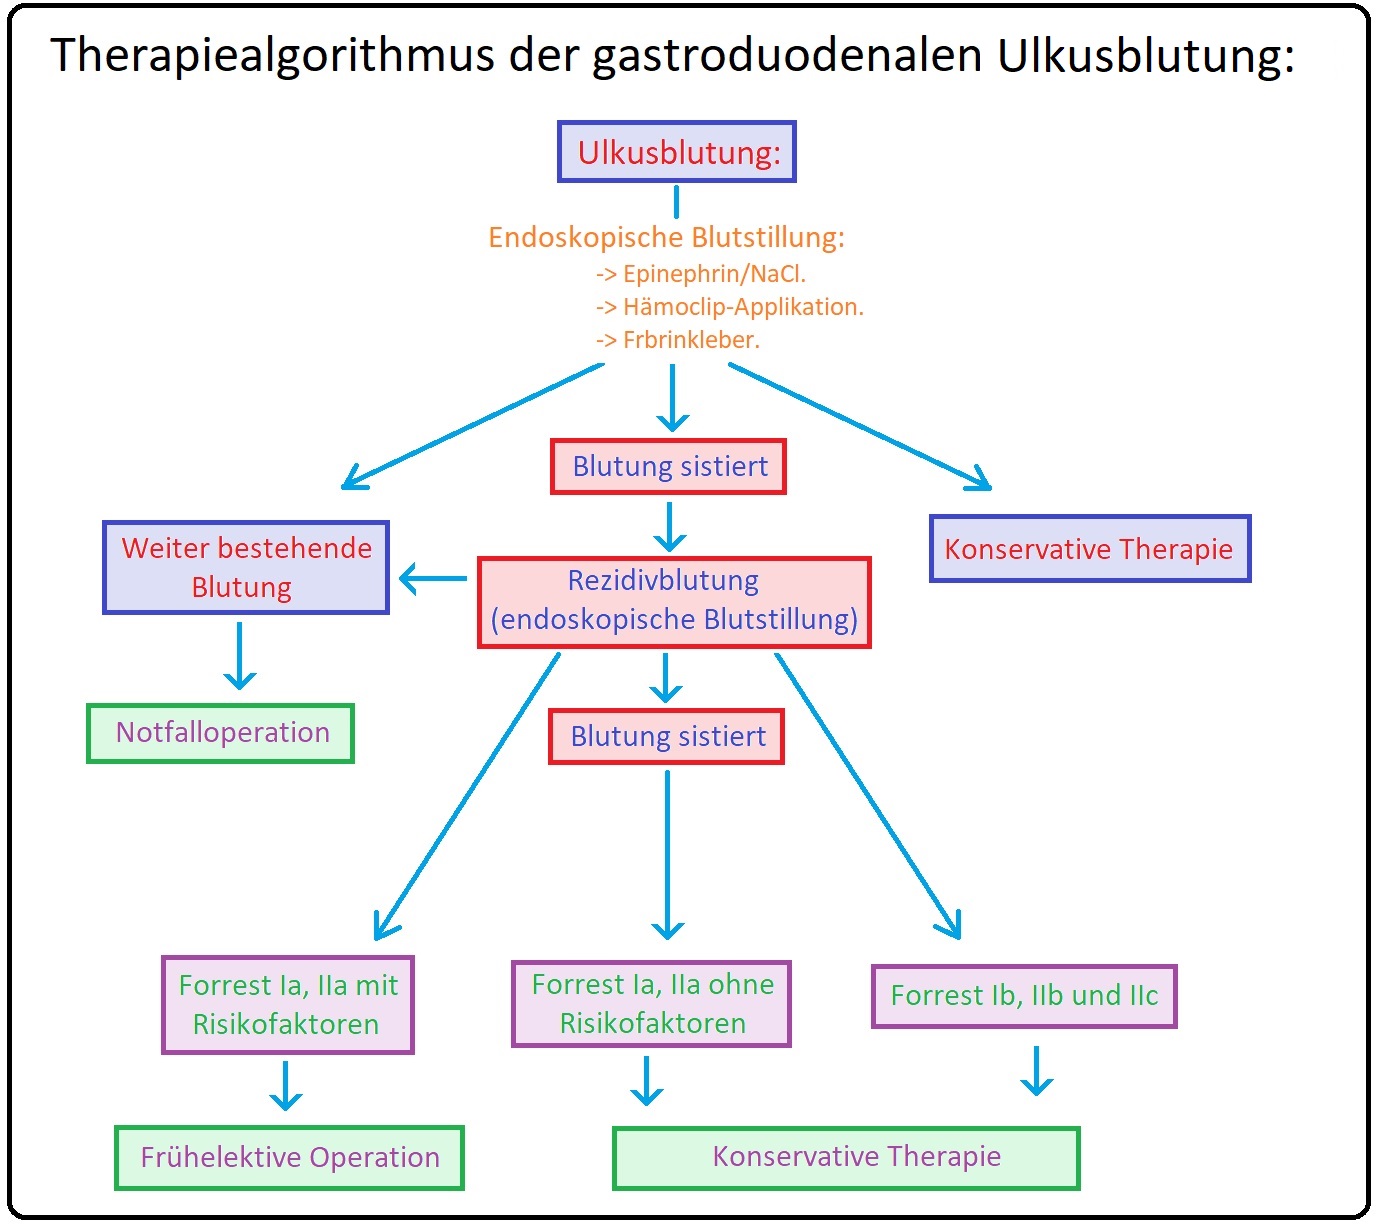 805 Therapiealgorithmus der gastrointestinalen Ulkuskrankheit